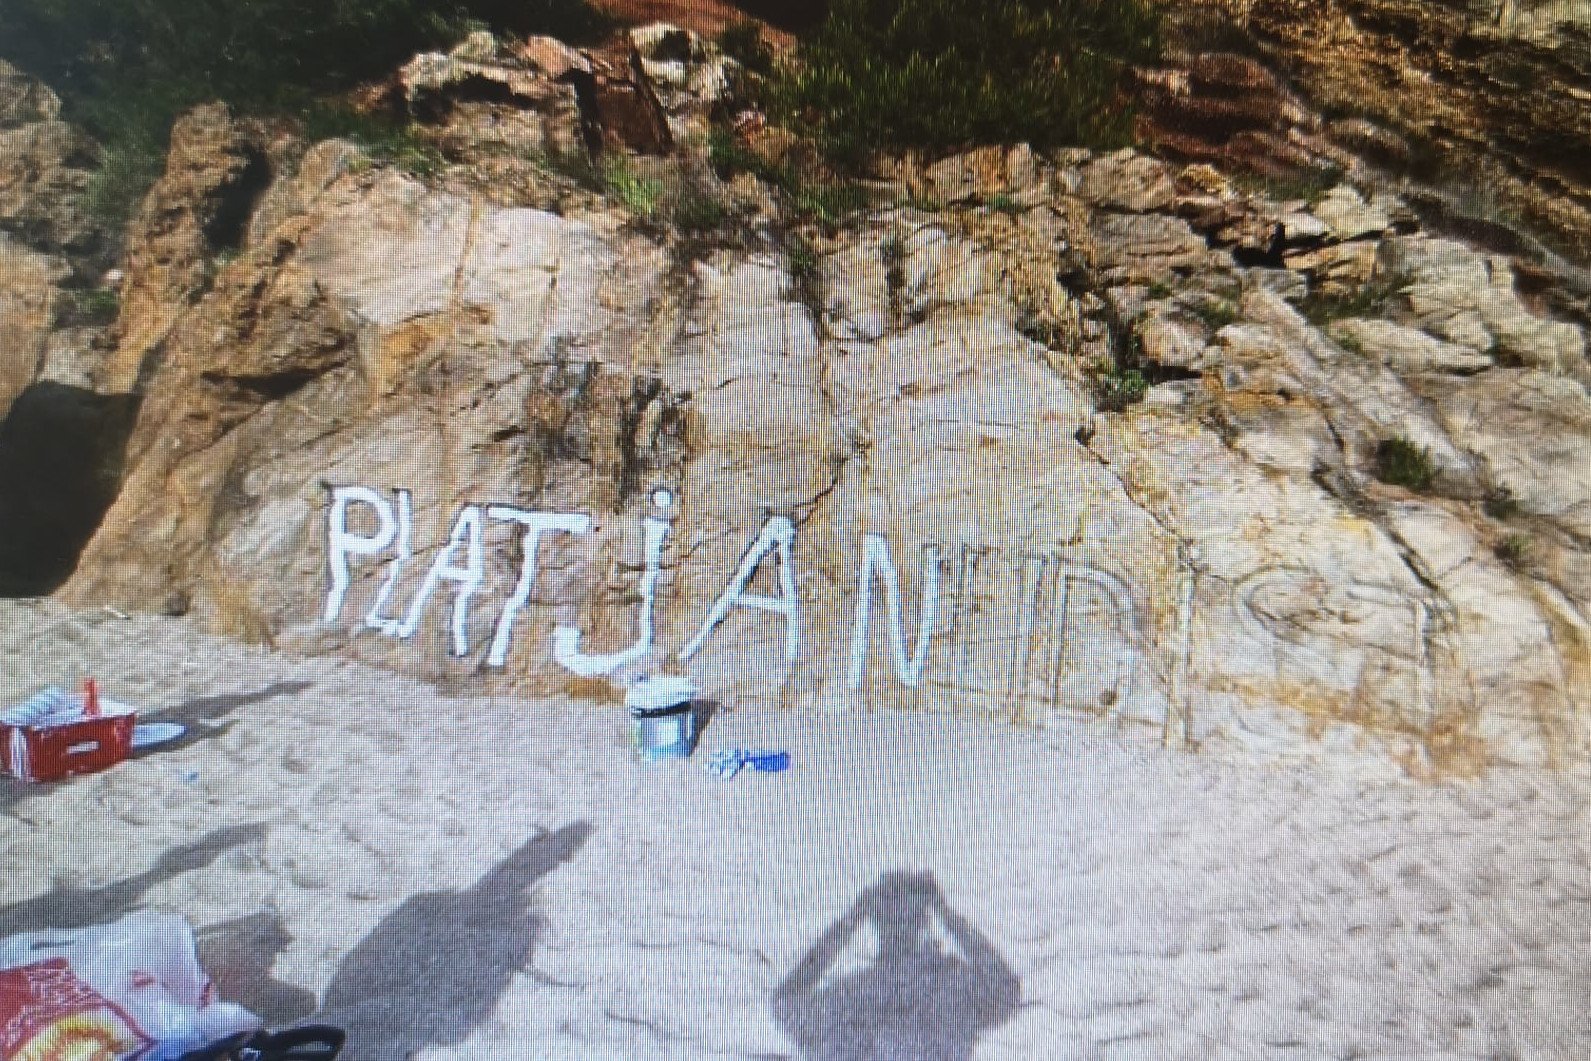 Multa de 1.420 euros per voler pintar 'platja nudista' en unes roques a Begur